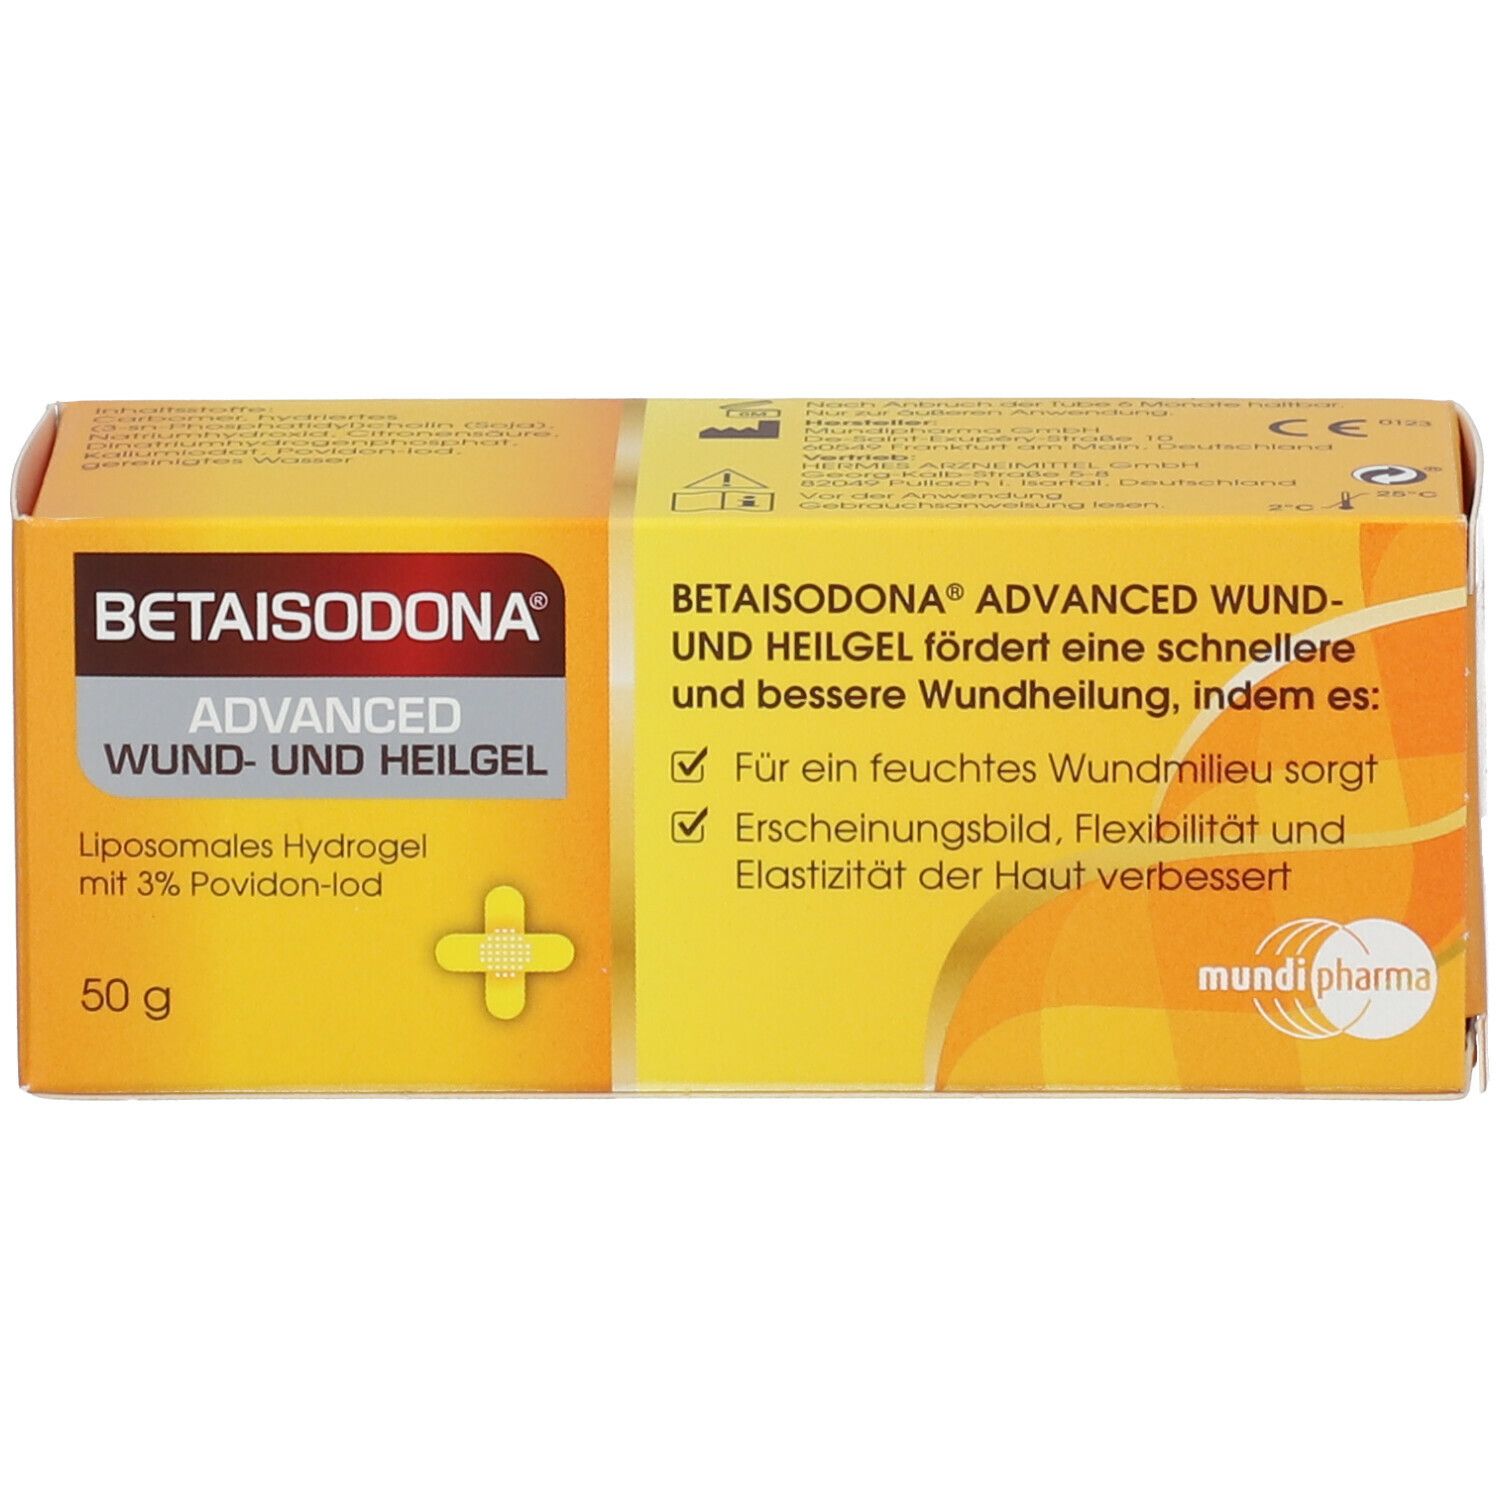 BETAISODONA® ADVANCED Wund- und Heilgel